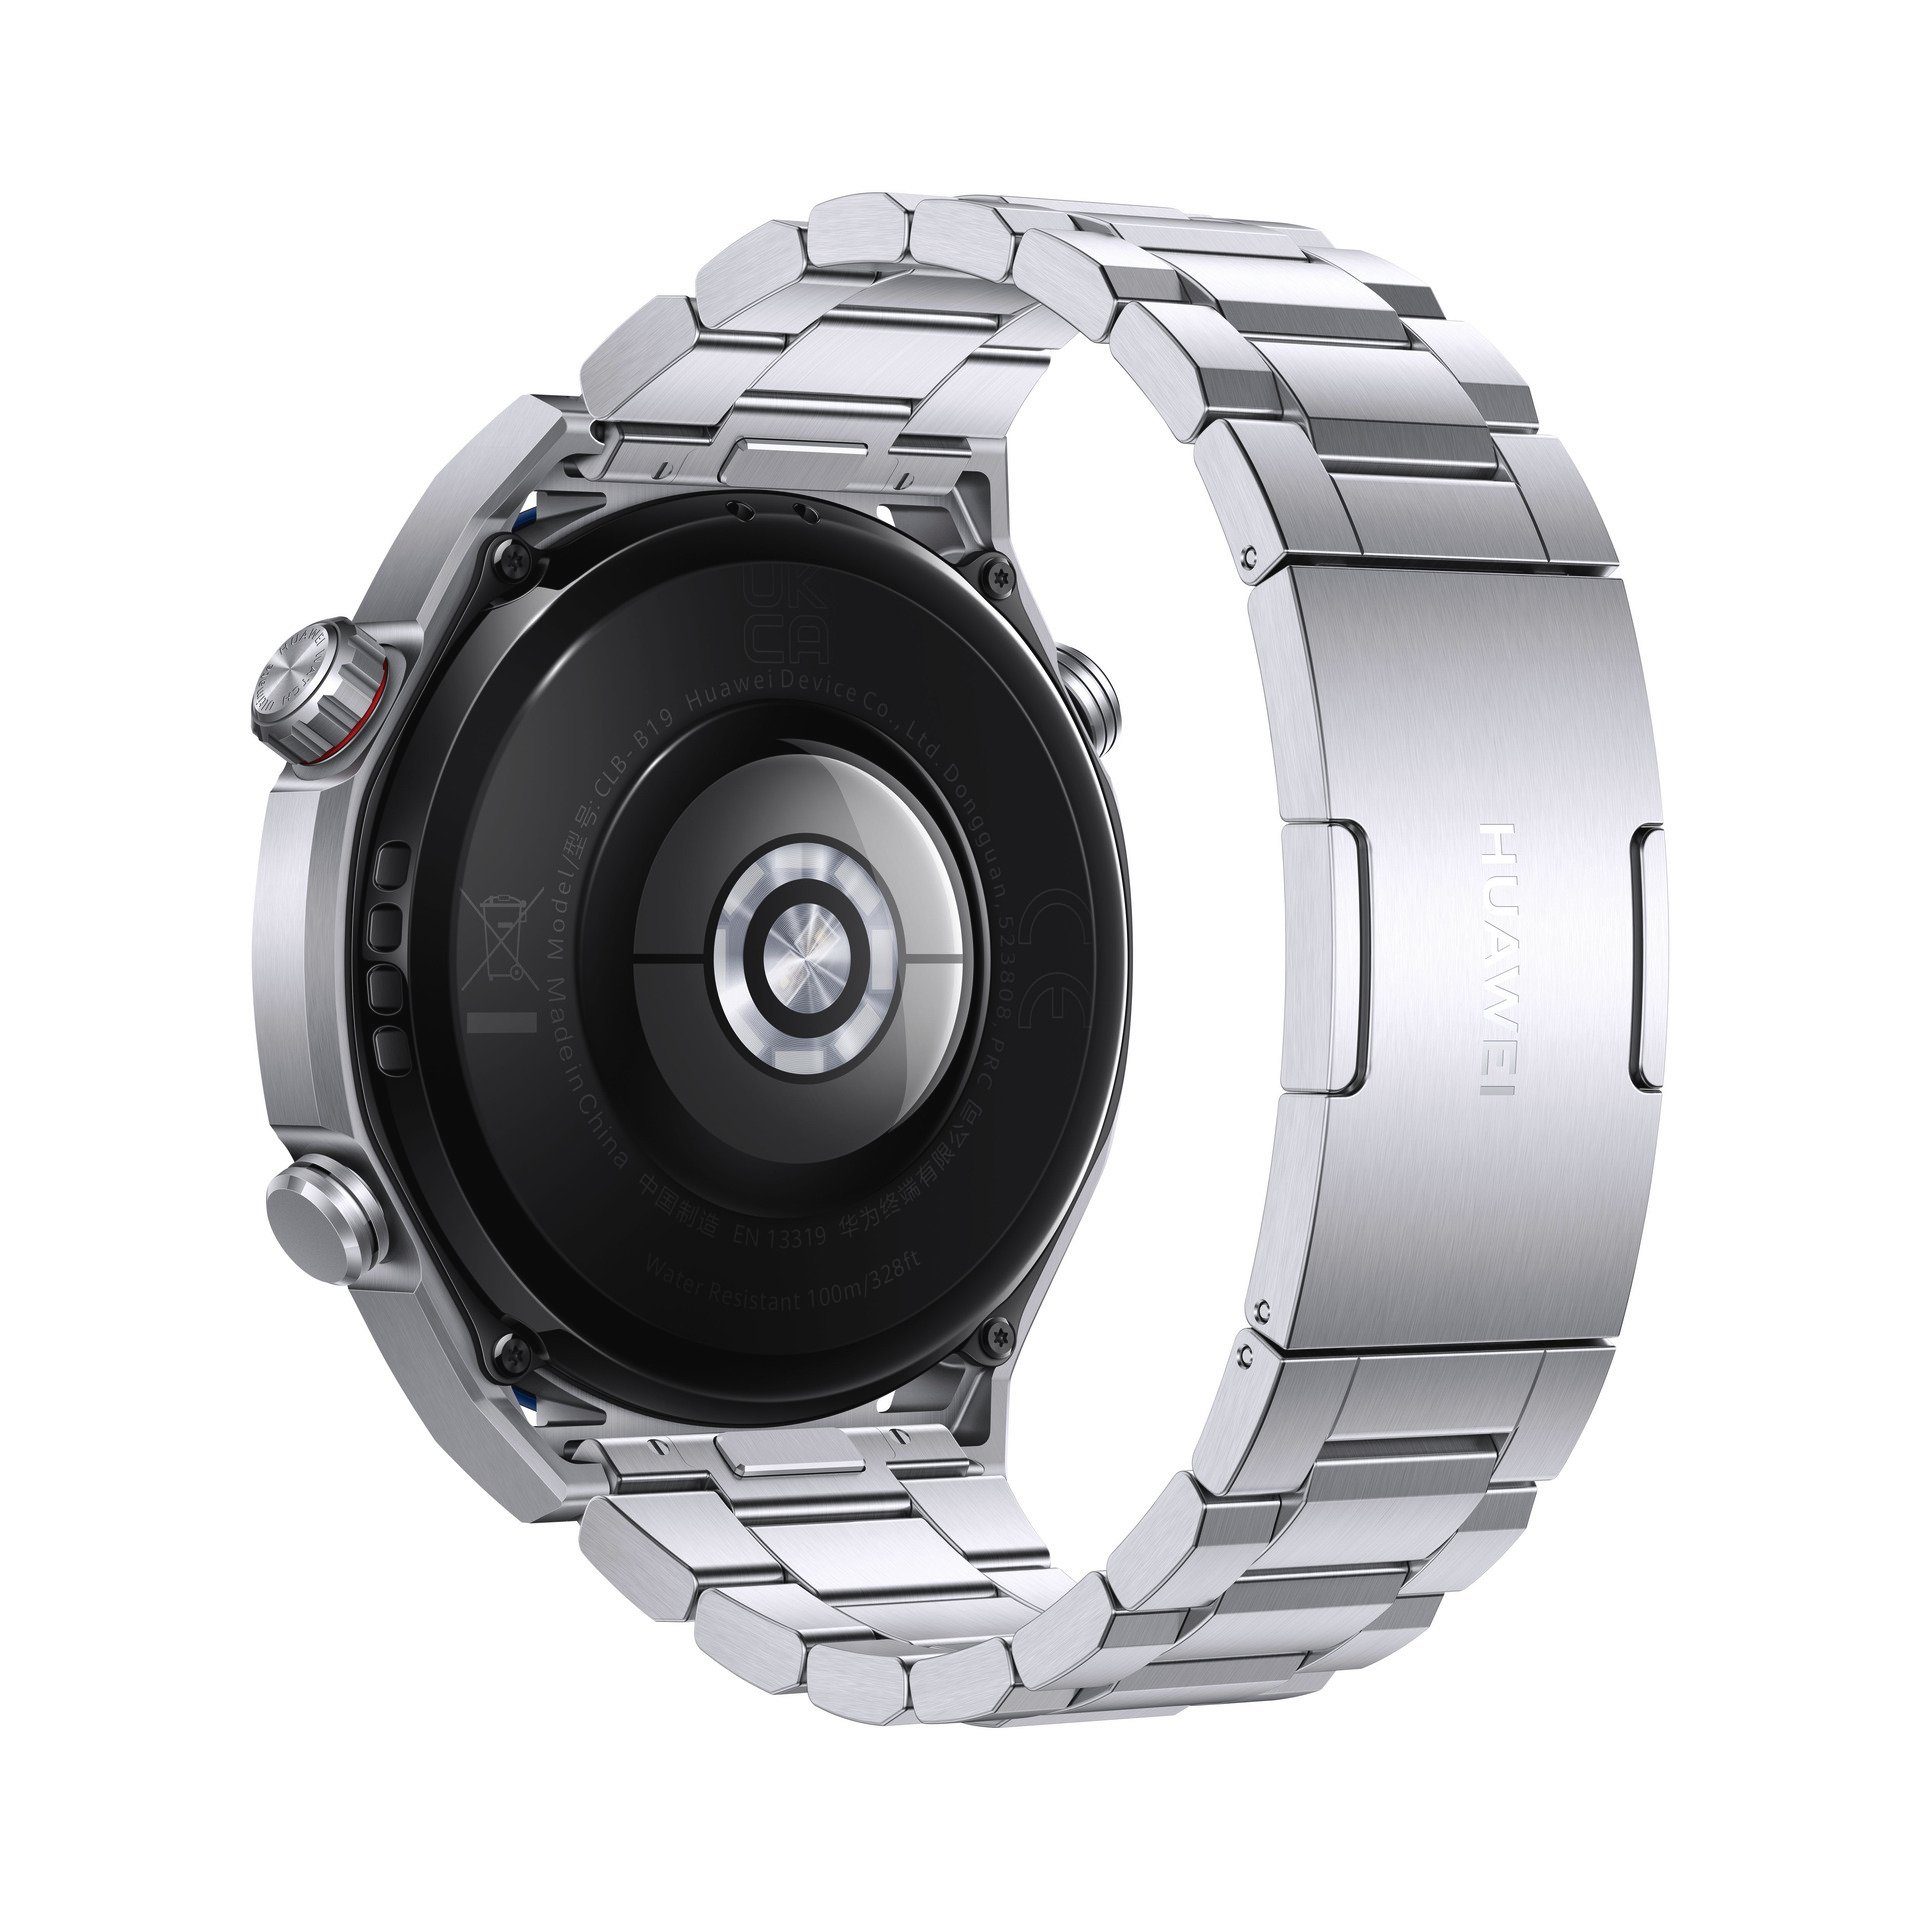 Silber Watch cm/1,5 Proprietär) Huawei Smartwatch Ultimate (3,81 Zoll, Silber |